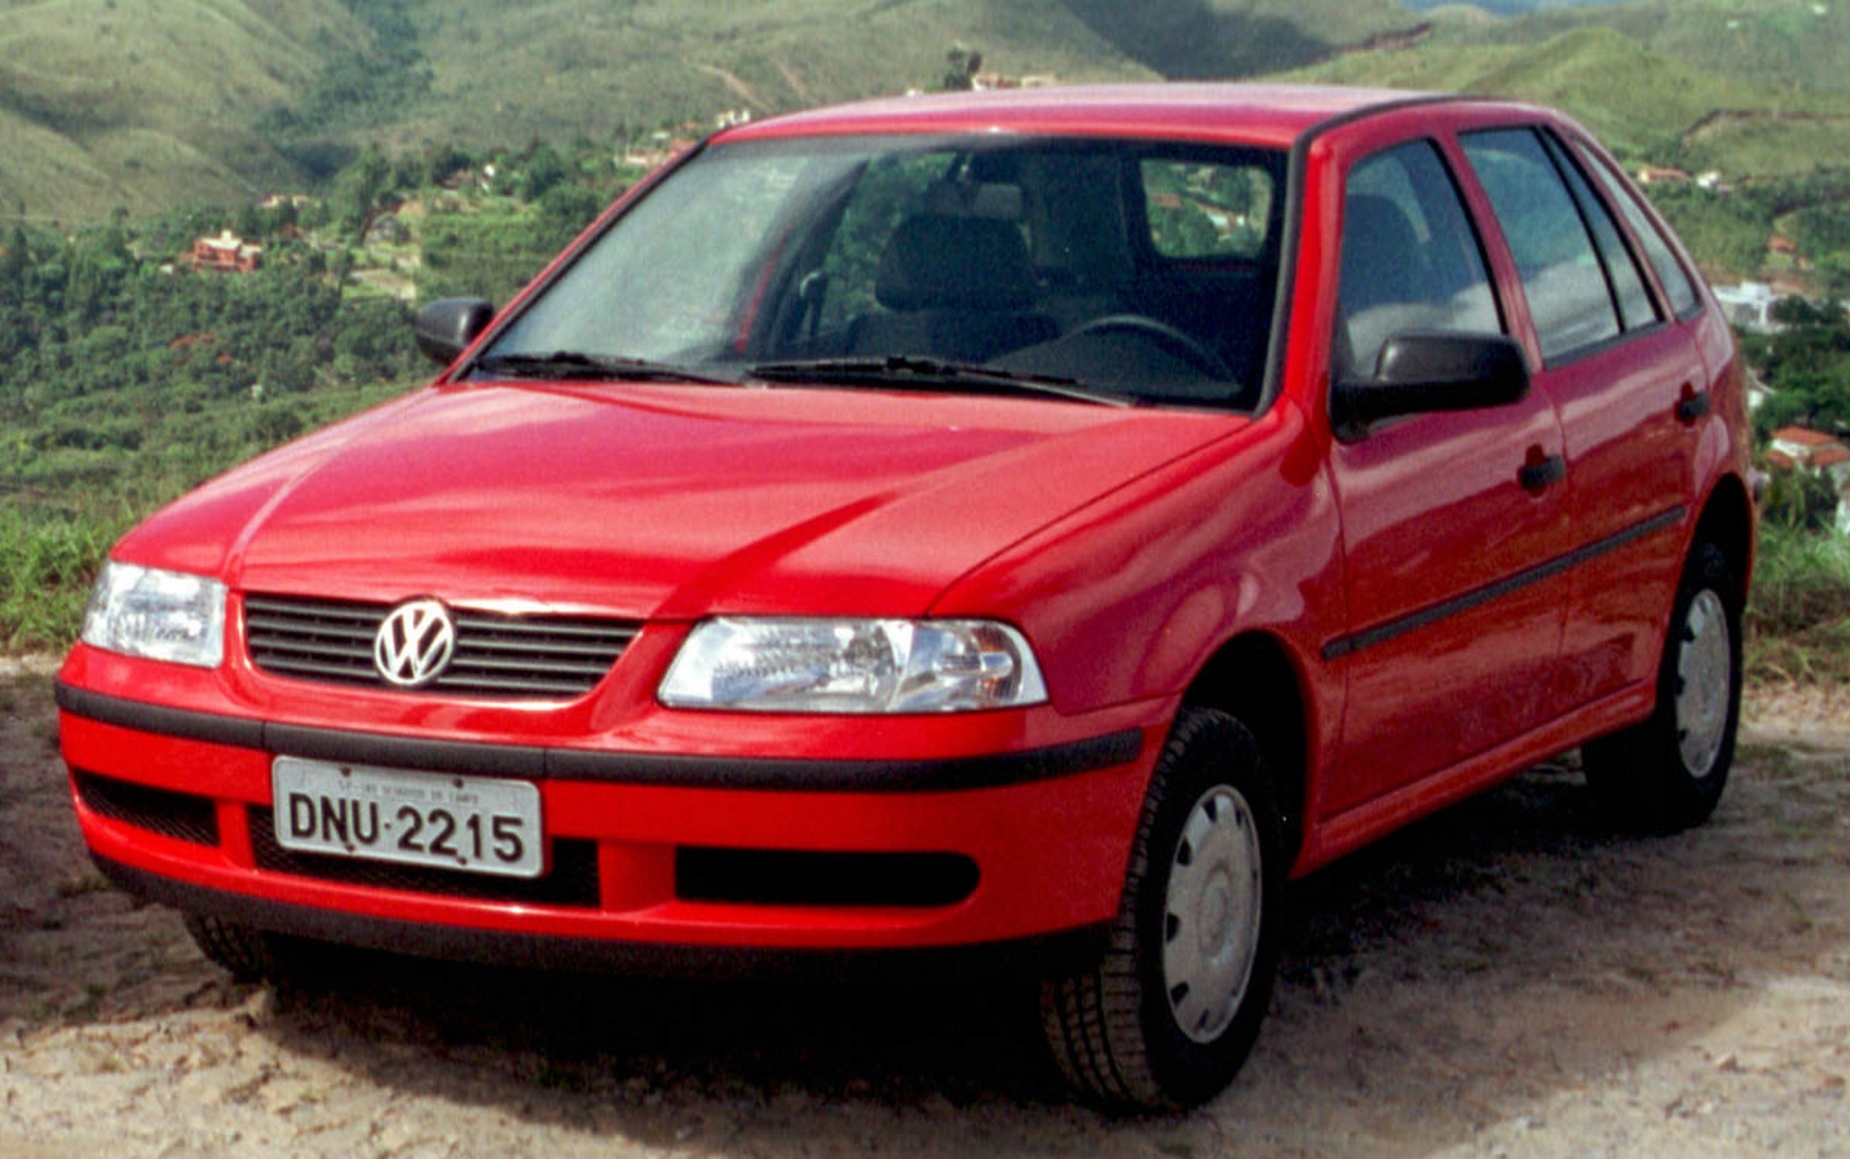 VW Gol City Trend 1.0 Total Flex quatro portas modelo 2005 vermelho de frente na terra